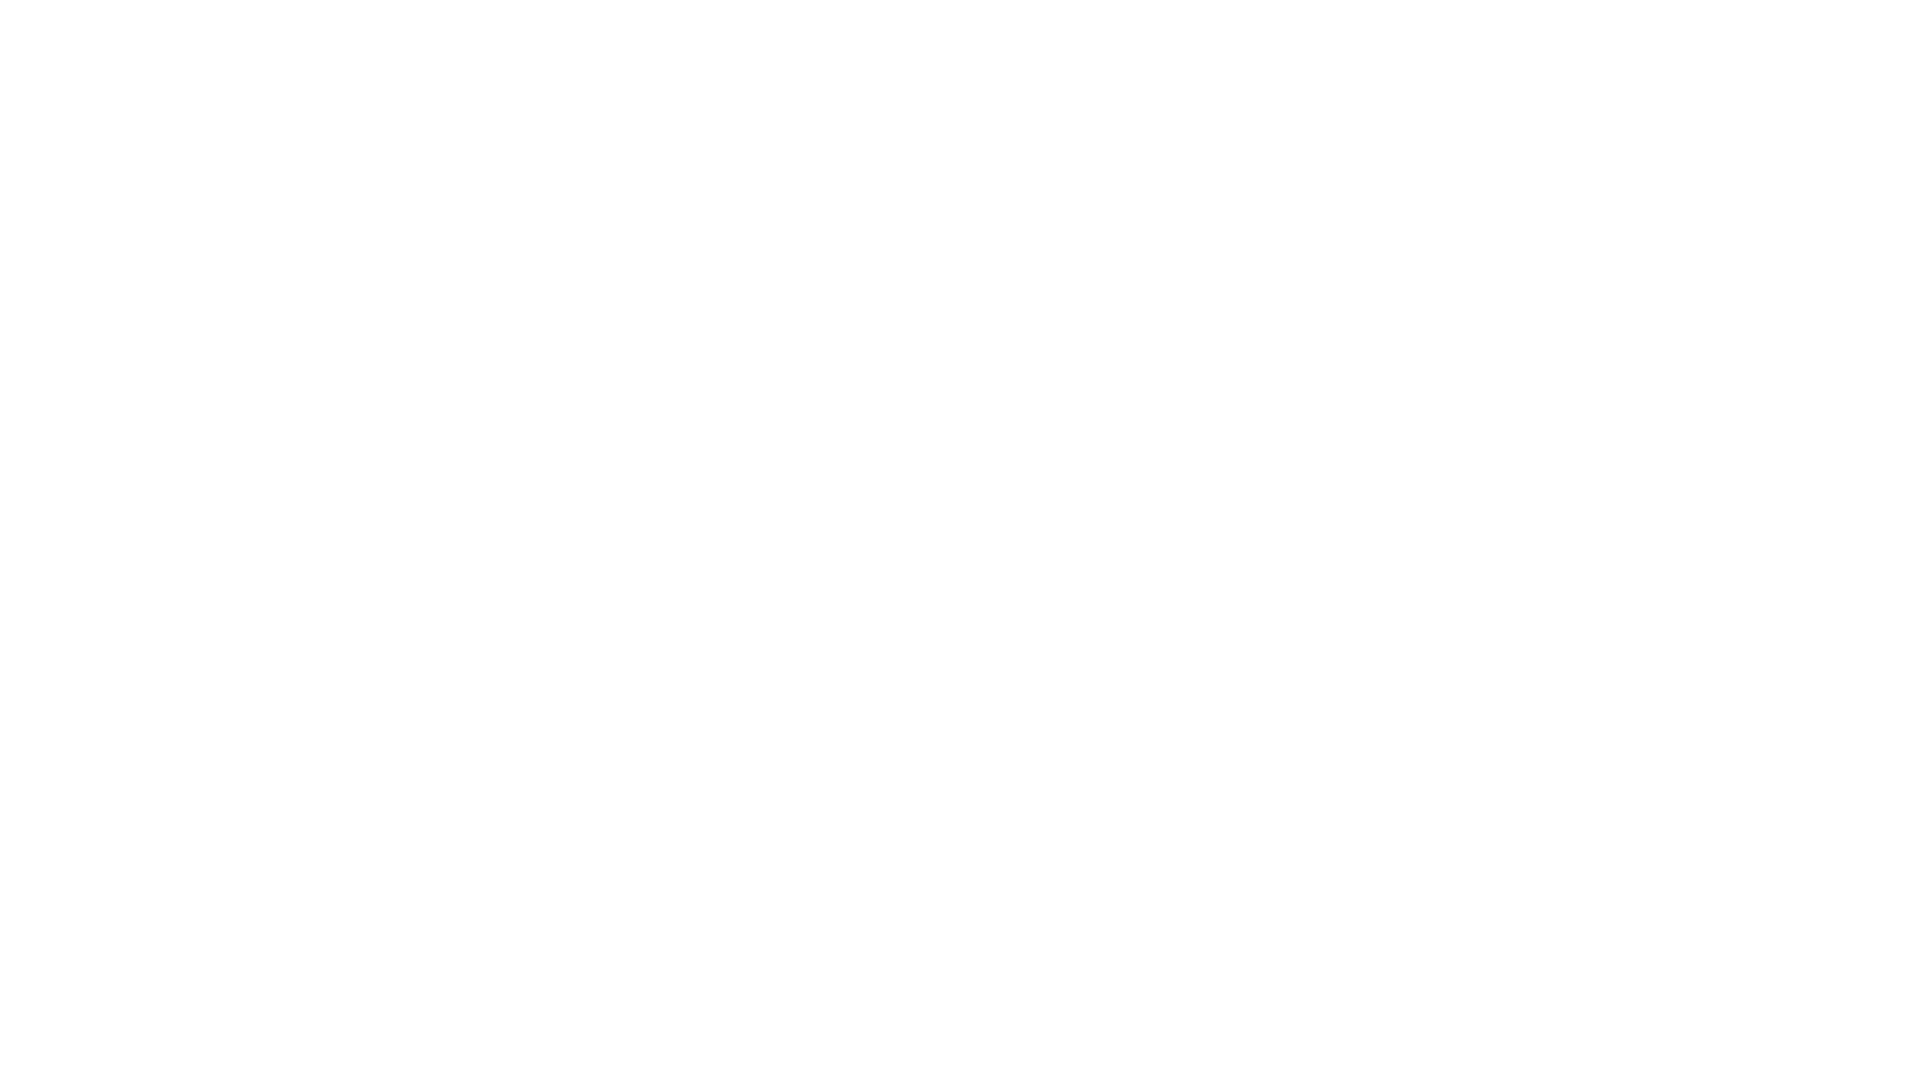 Yonge Salon